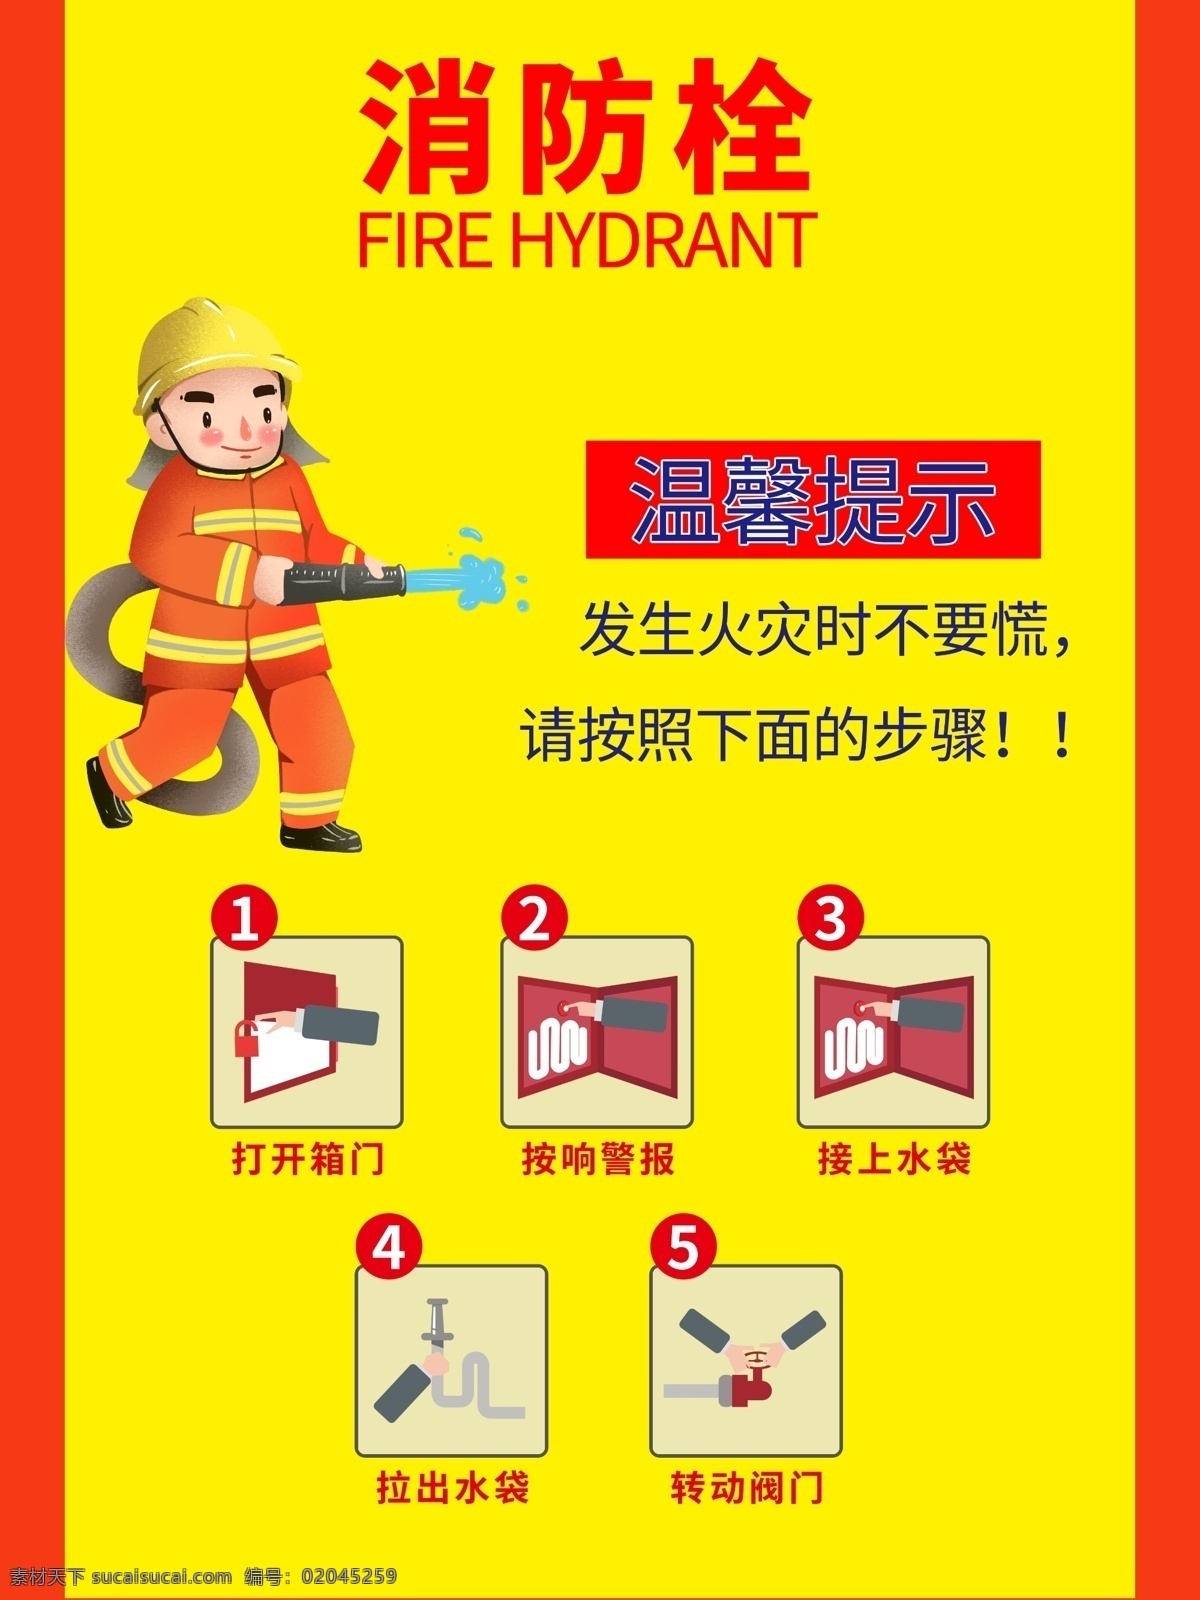 消防栓 消火栓 广告贴 海报 消防安全 使用方法 灭火器 消防器材 设施 火灾 安全生产 广告